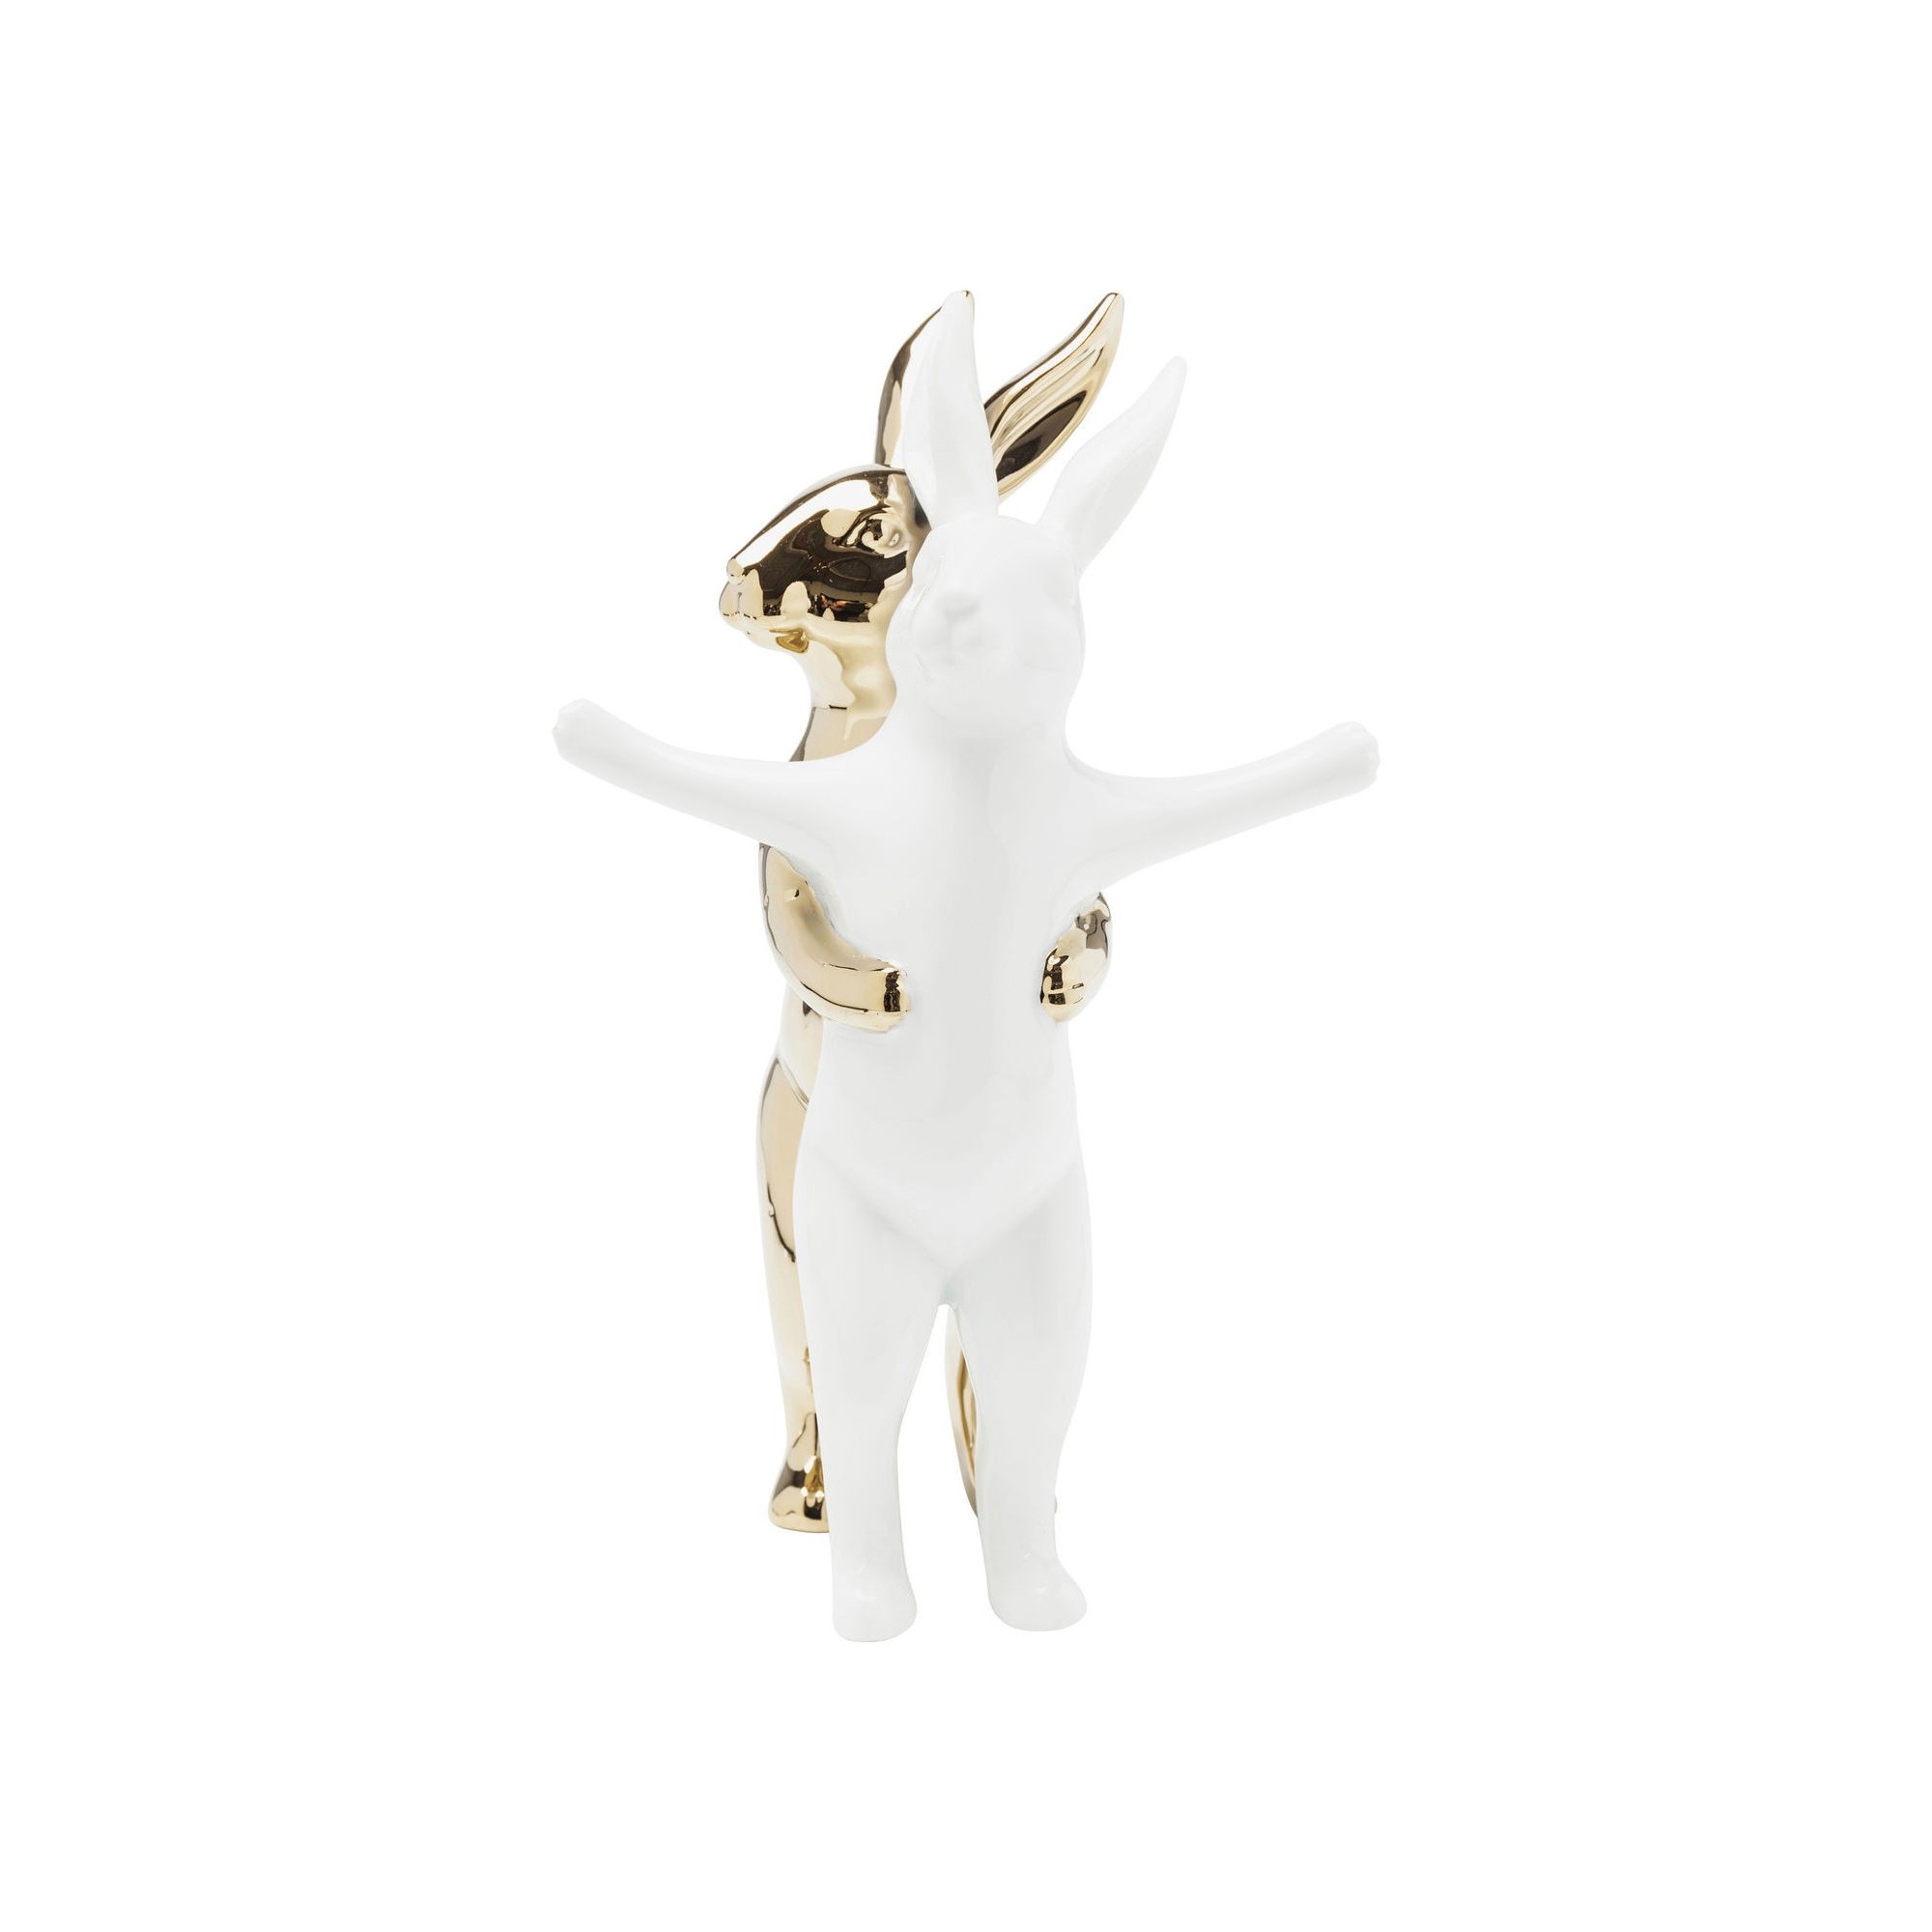 Deco Figurine Hugging Rabbits Medium Kare Design